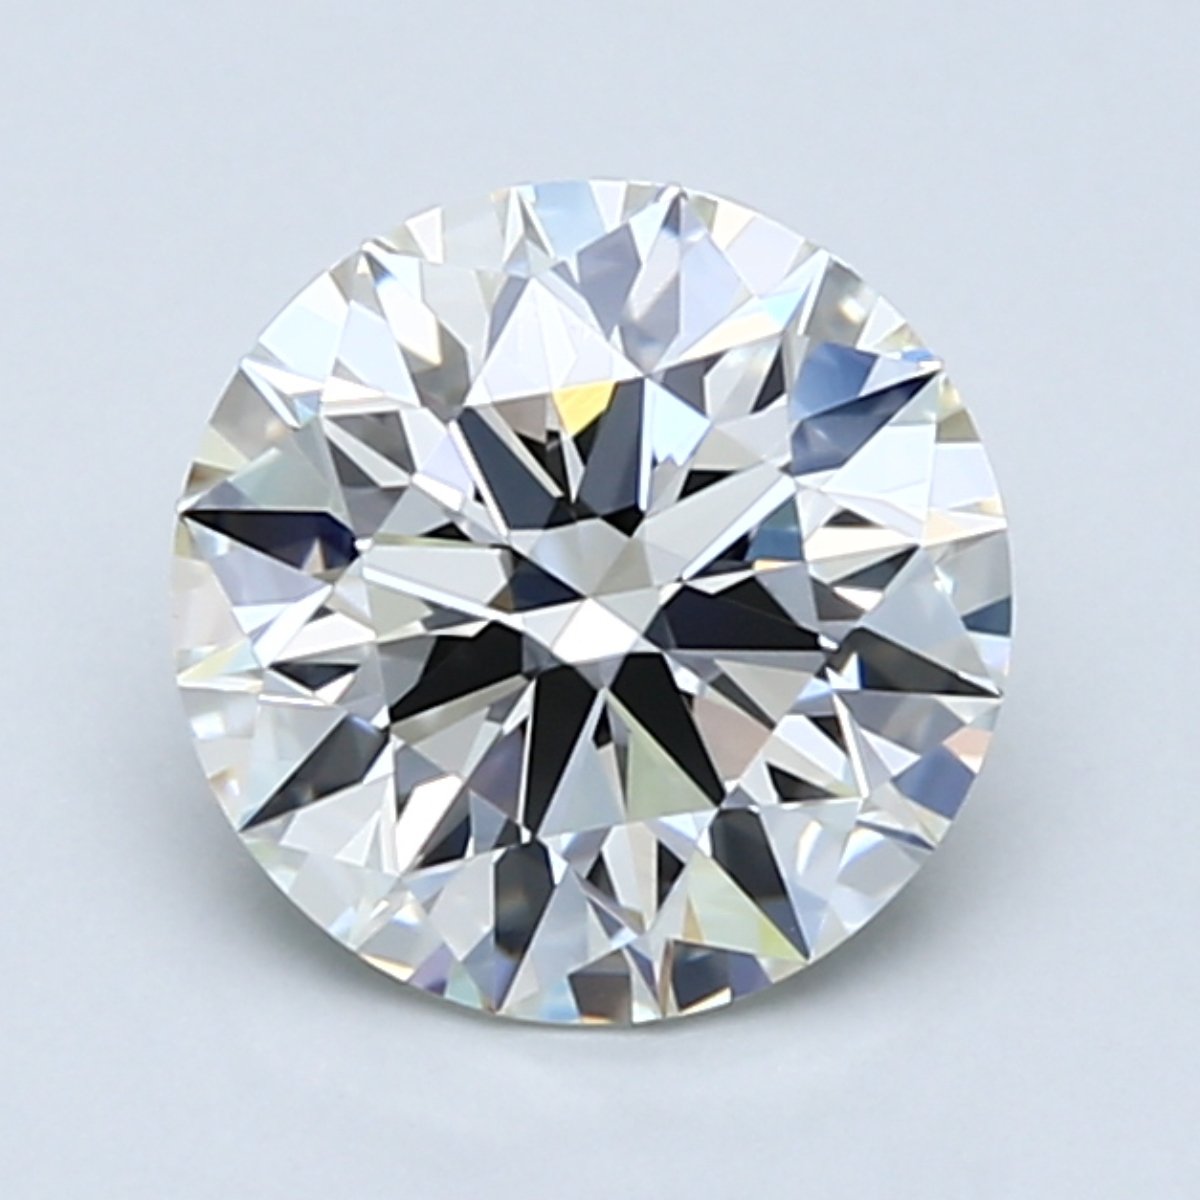 Free .03-Carat Round Cut Diamond